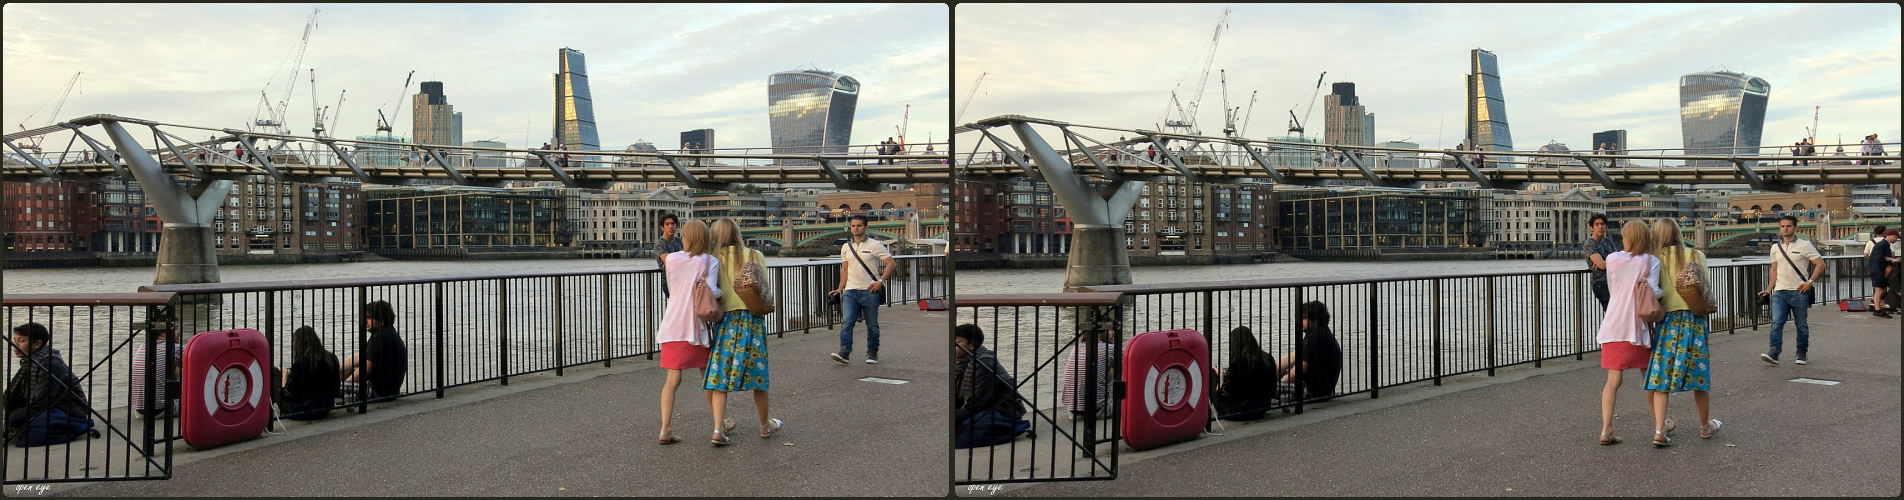 1._ London am Abend / Millenium Bridge / X View